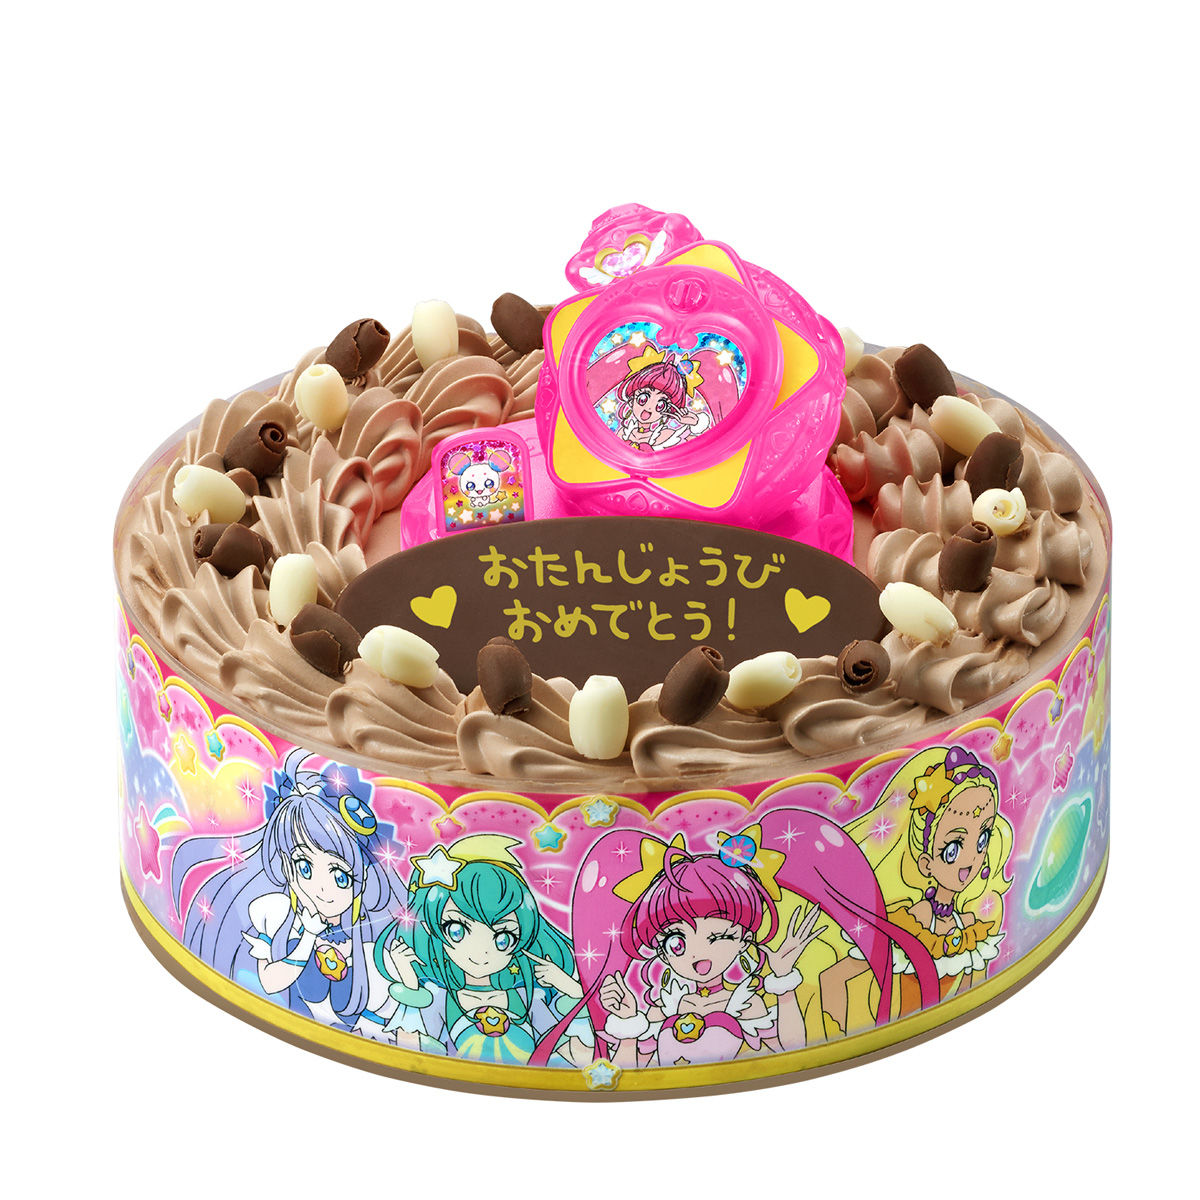 キャラデコお祝いケーキ スター トゥインクルプリキュア チョコクリーム 5号サイズ 発売日 2019年2月22日 バンダイ キャンディ公式サイト